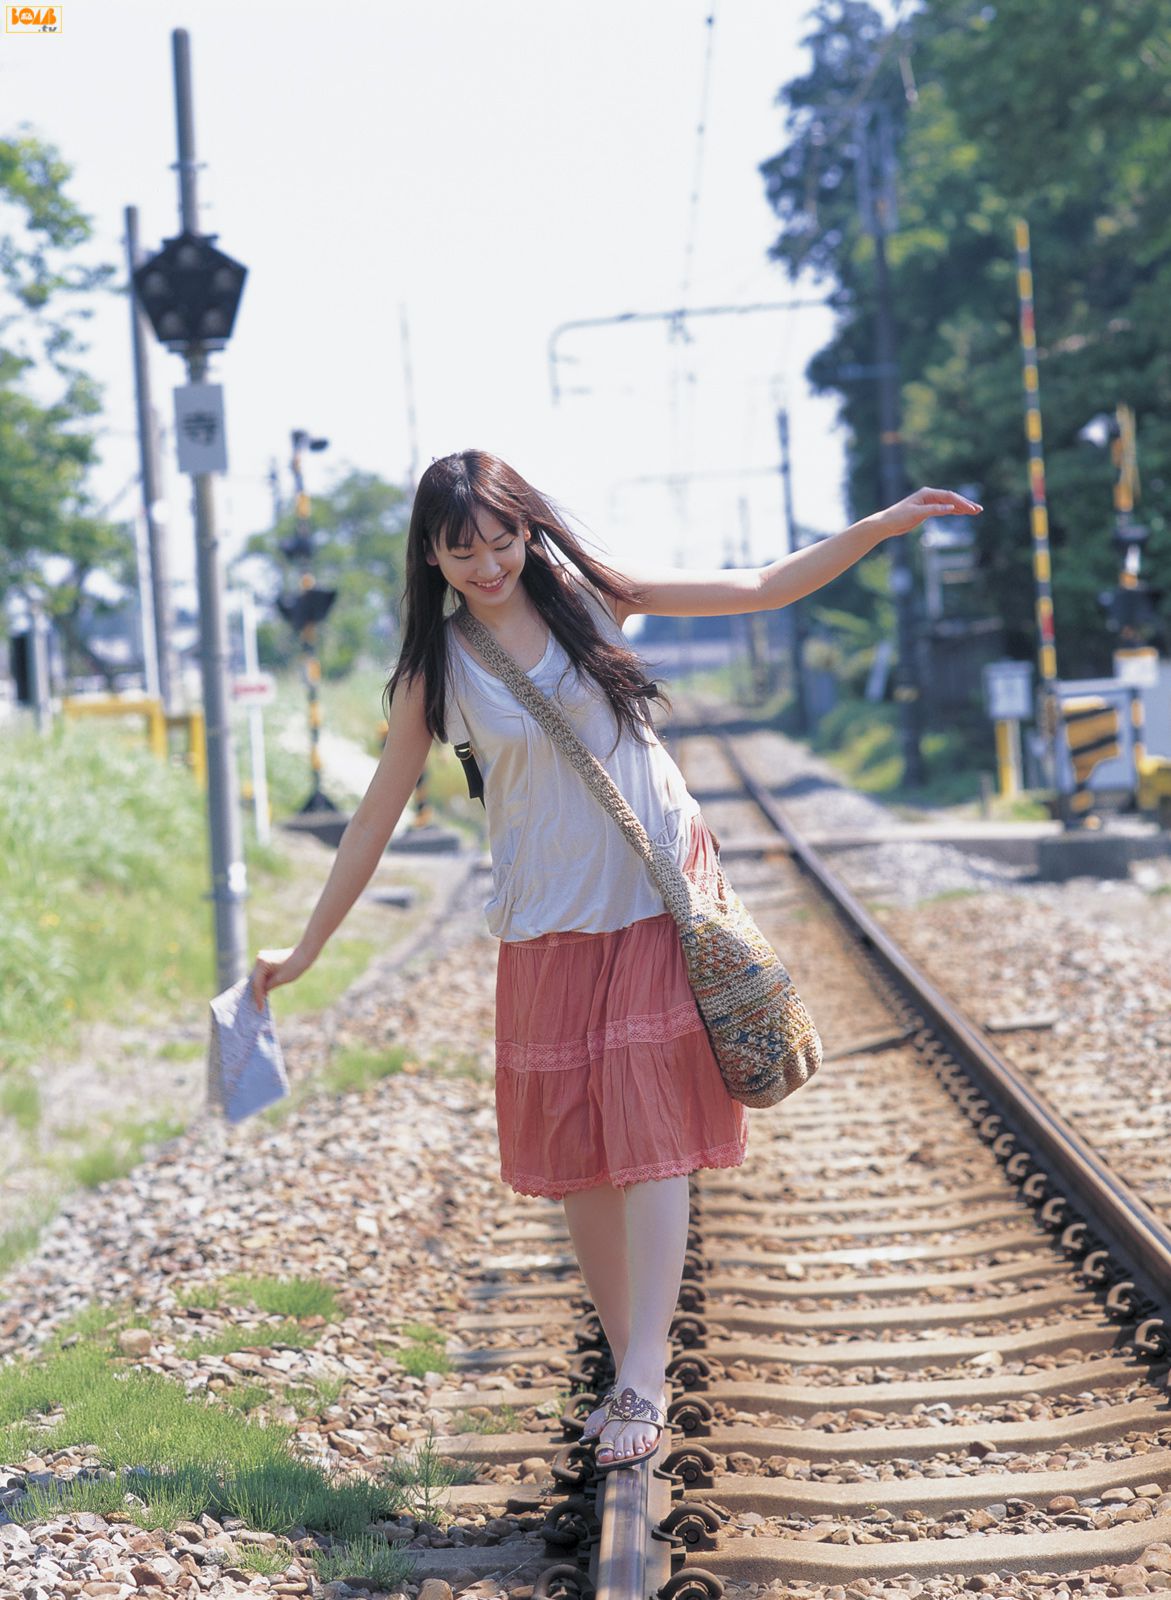 People 1171x1600 Asian women Yui Aragaki Japanese women actress dress model railway long hair smiling women outdoors